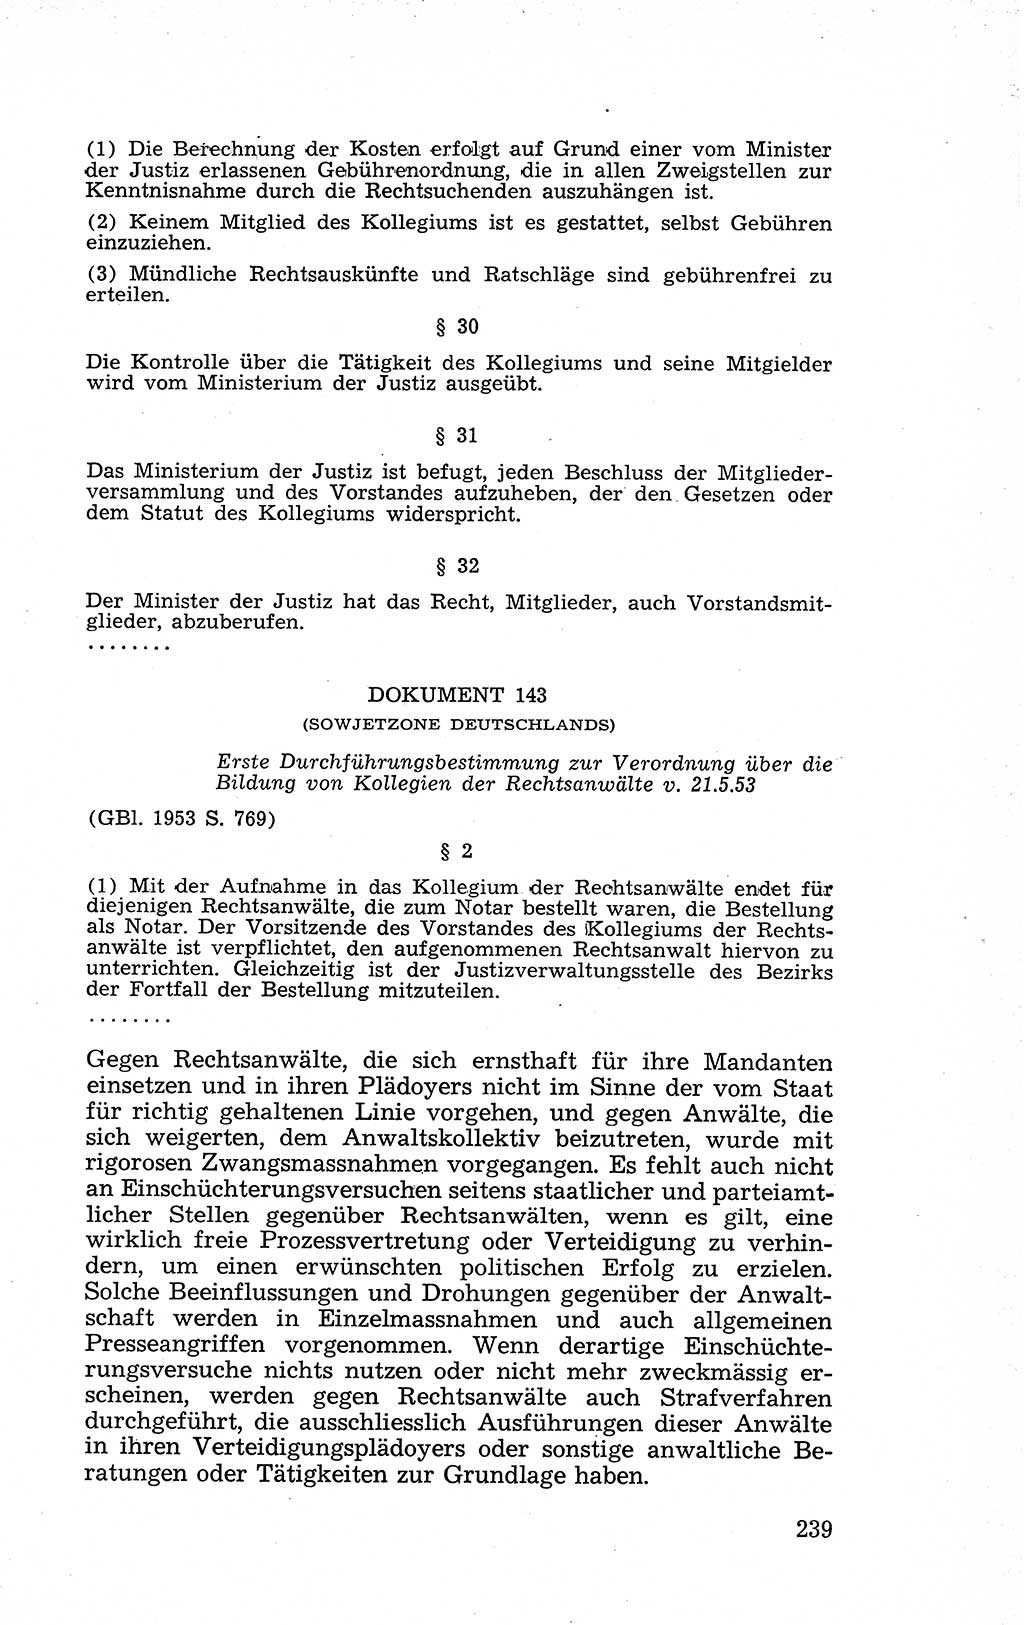 Recht in Fesseln, Dokumente, Internationale Juristen-Kommission [Bundesrepublik Deutschland (BRD)] 1955, Seite 239 (R. Dok. IJK BRD 1955, S. 239)